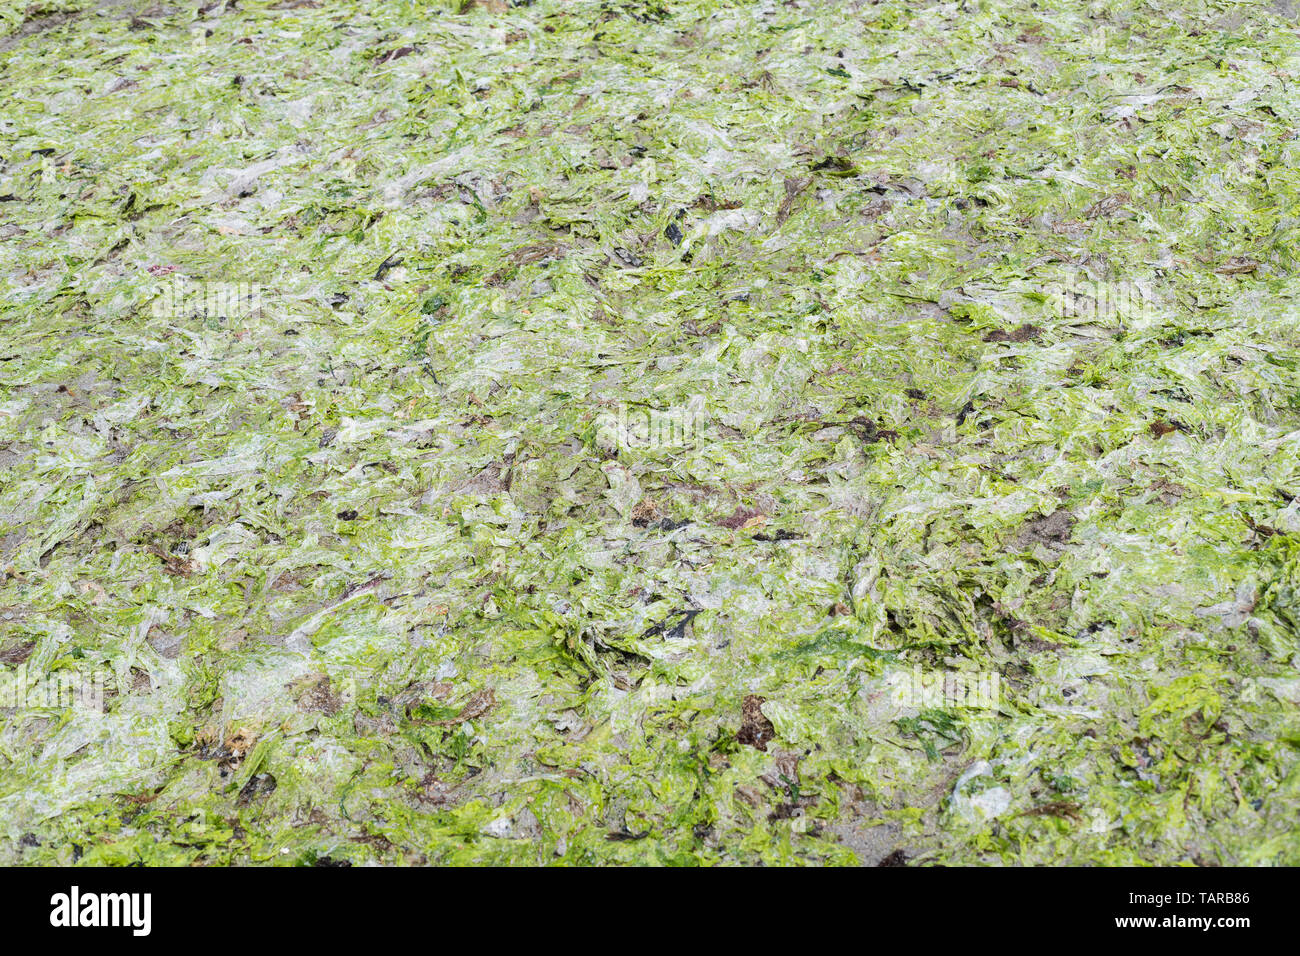 Die grüne Algen Sea Lettuce/Ulva lactuca gewaschen an Land an einem Strand und hinterlegt bei der Drift oder tideline. Frischen Salat ist essbar. Stockfoto